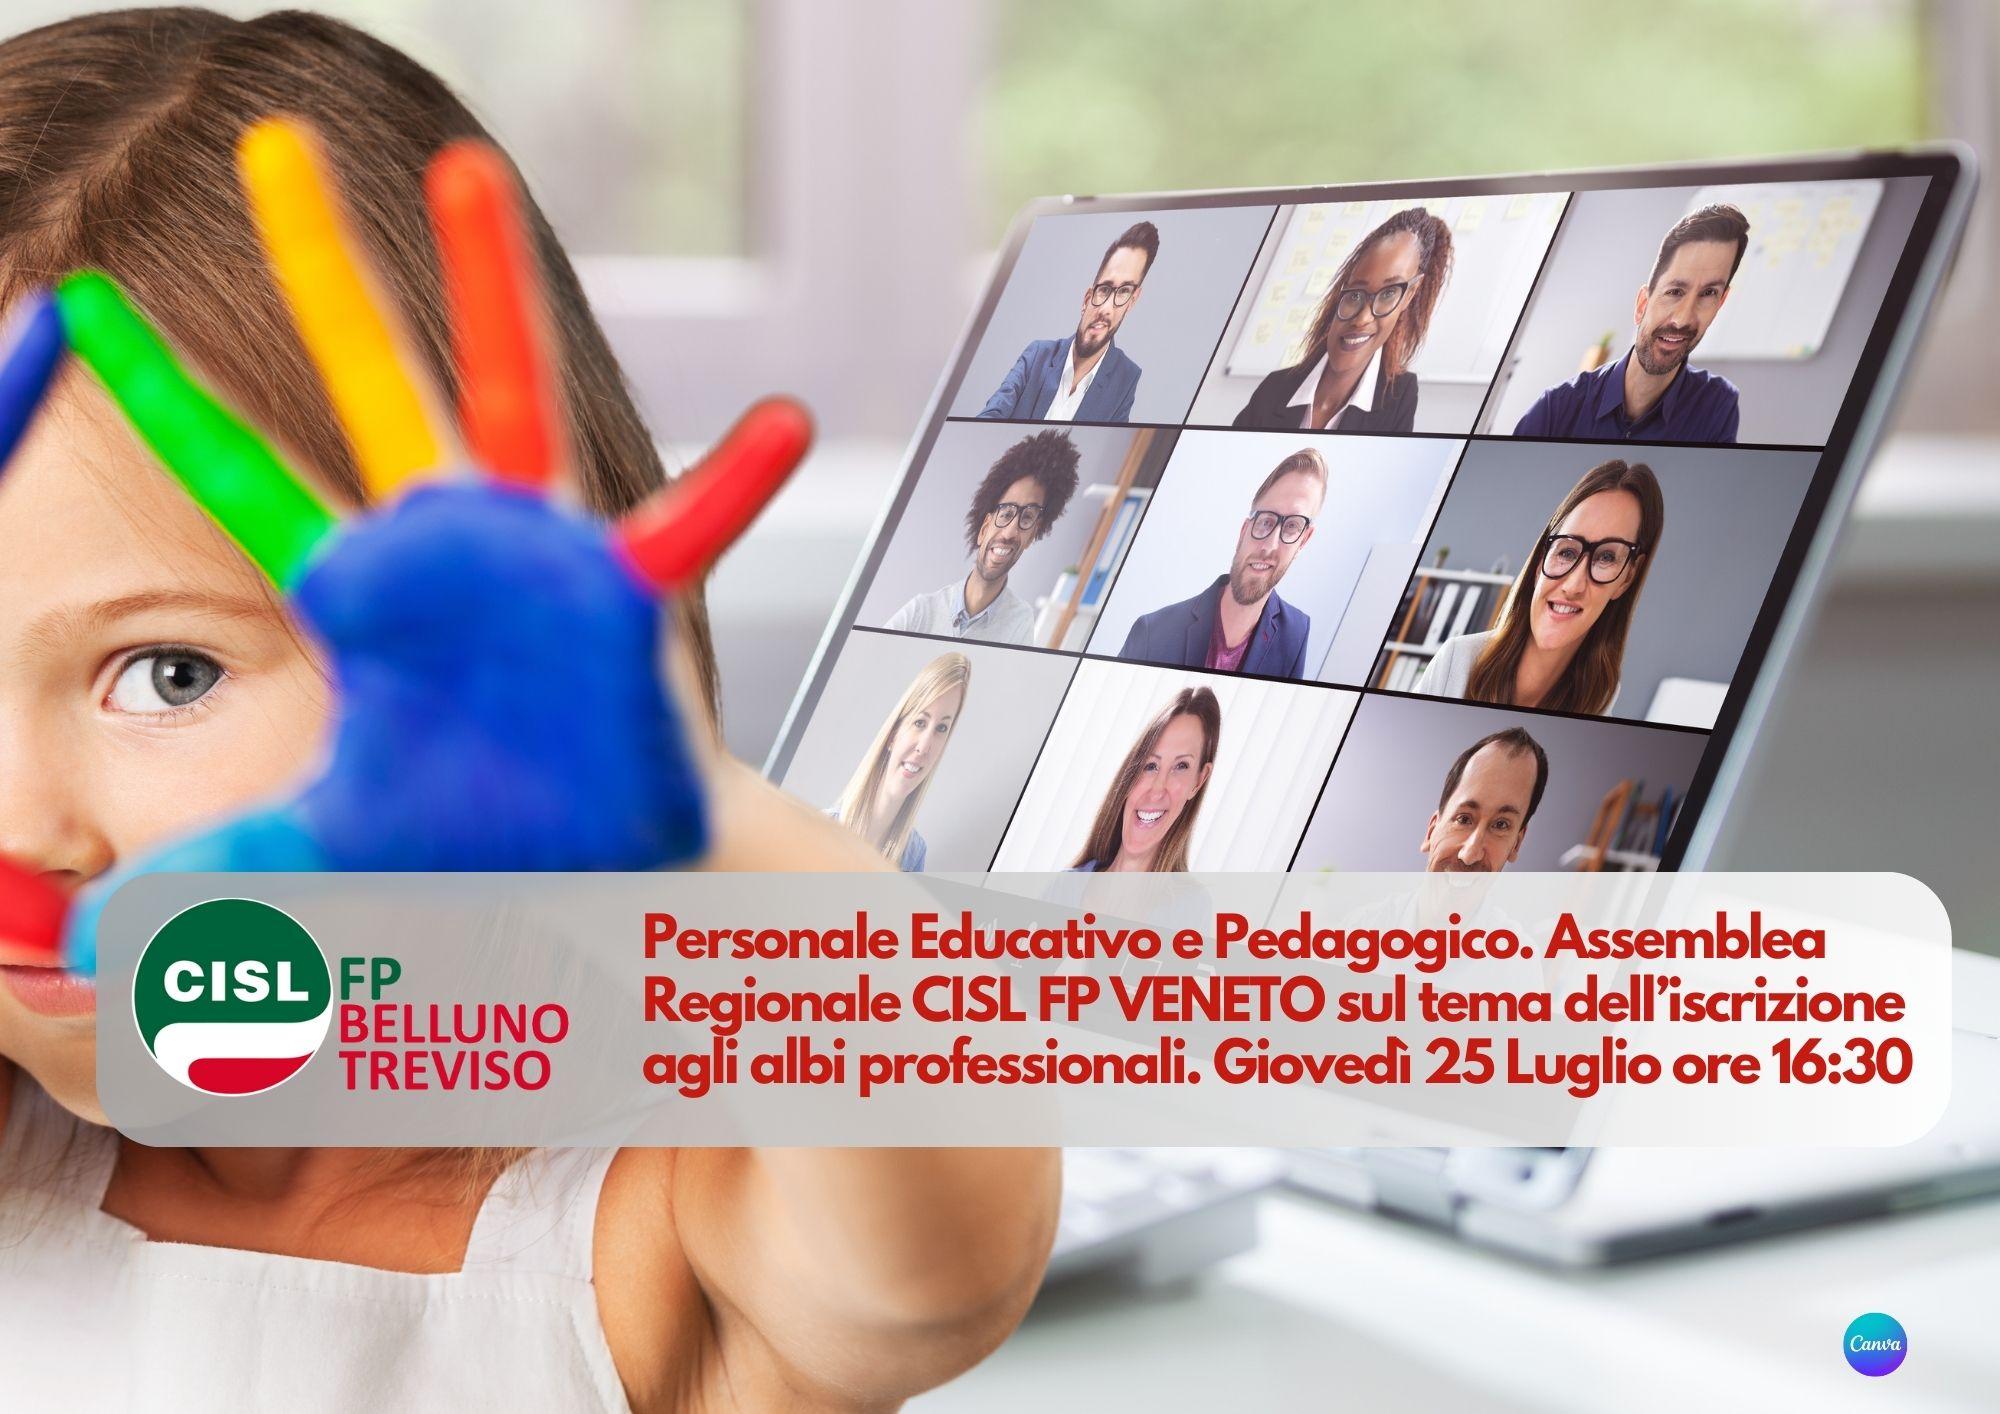 CISL FP Belluno Treviso. Personale educativo e pedagogico: 25 luglio ore 16.30 assemblea regionale sul tema dell'ordinamento